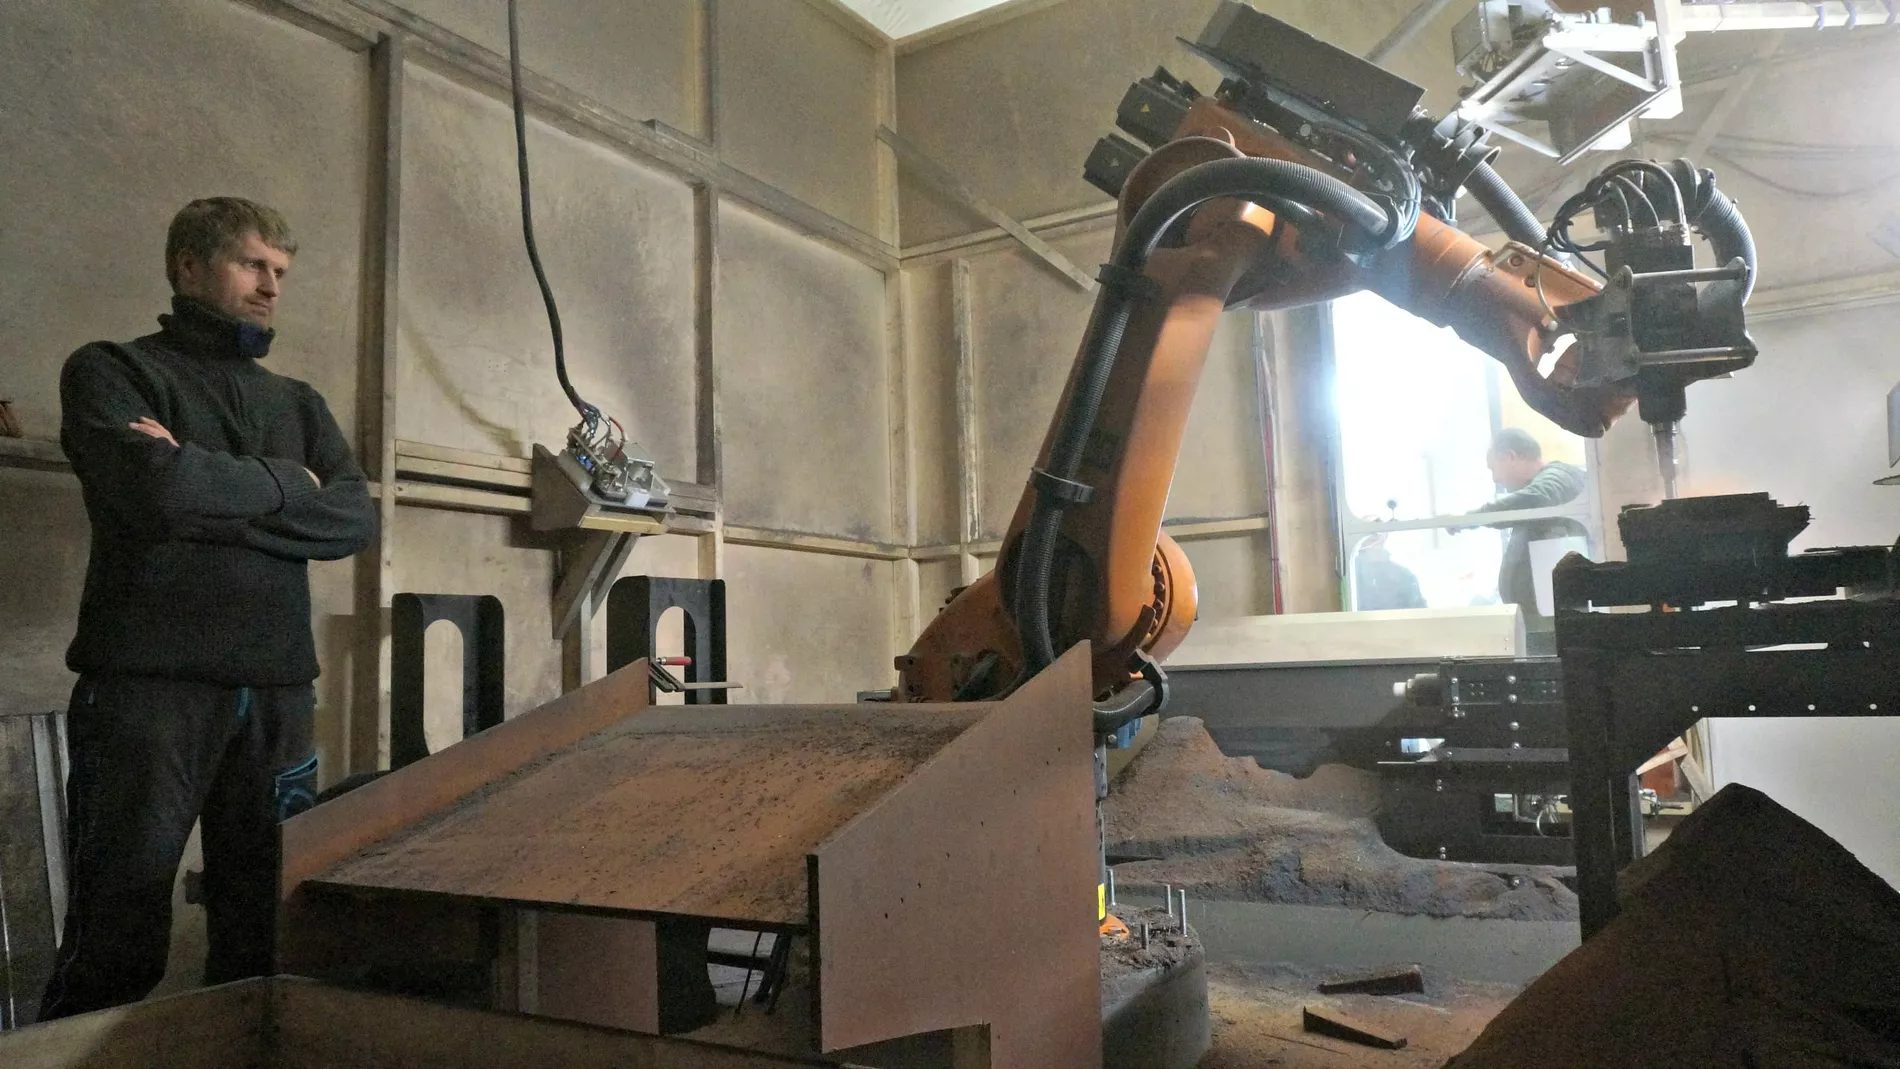 Robot revolusjon i skjeftefabrikken